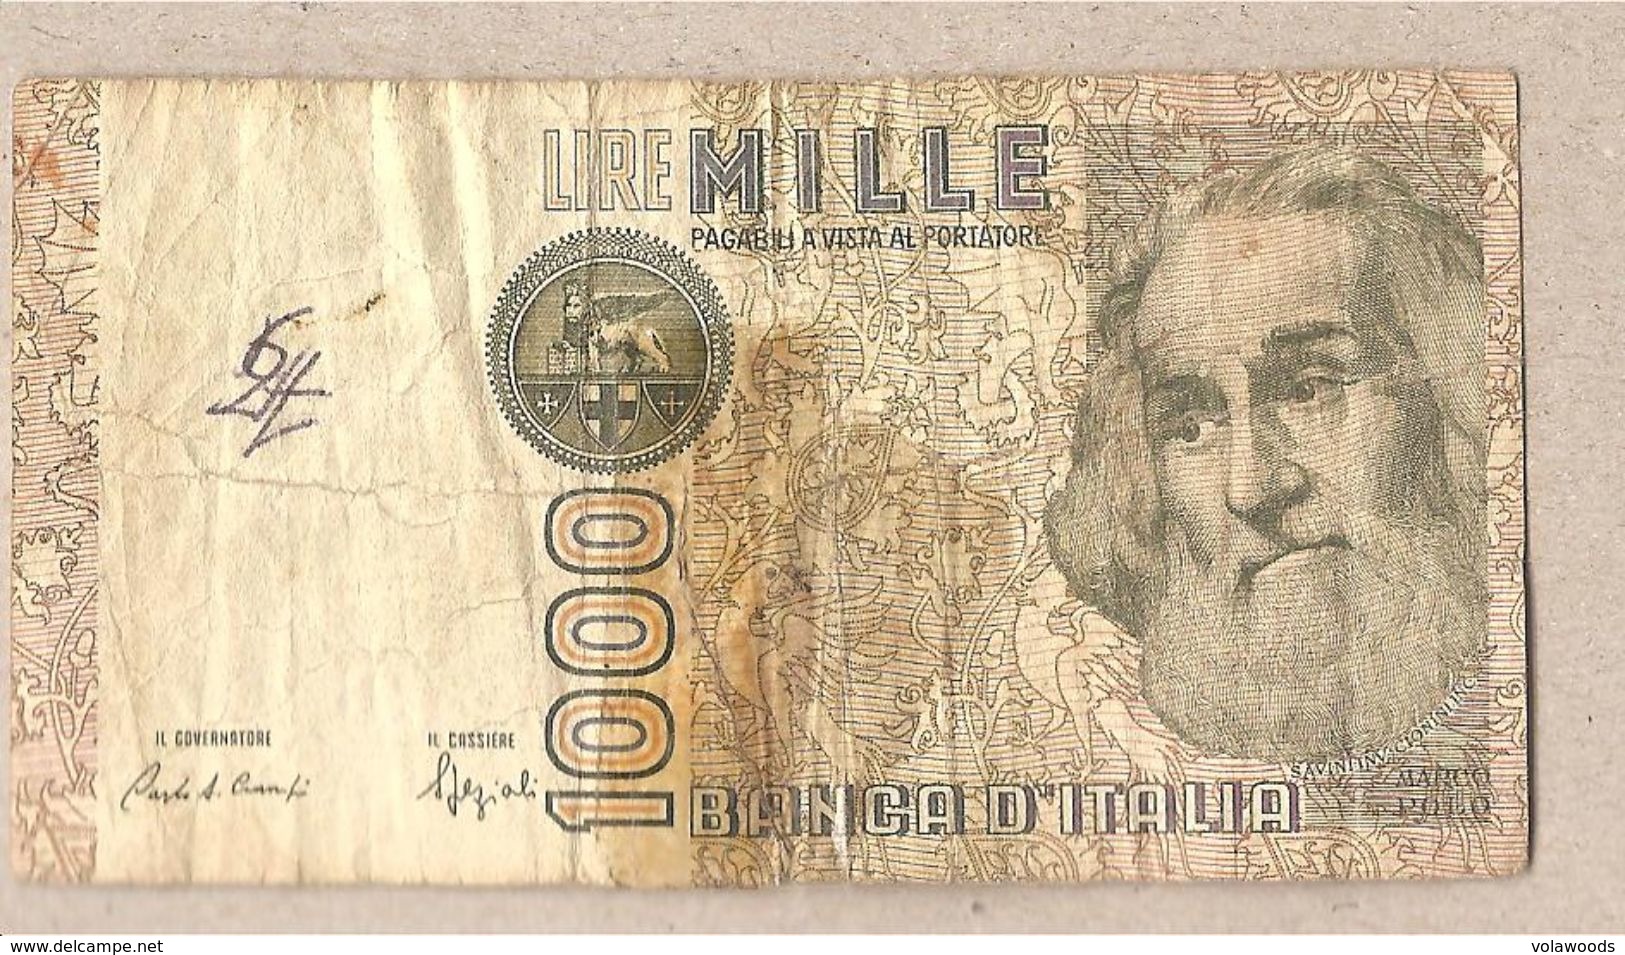 Italia - Banconota Circolata Da £ 1000 "Marco Polo" Suffisso "F" P-109b.2 - 1988 #19 - 1000 Lire